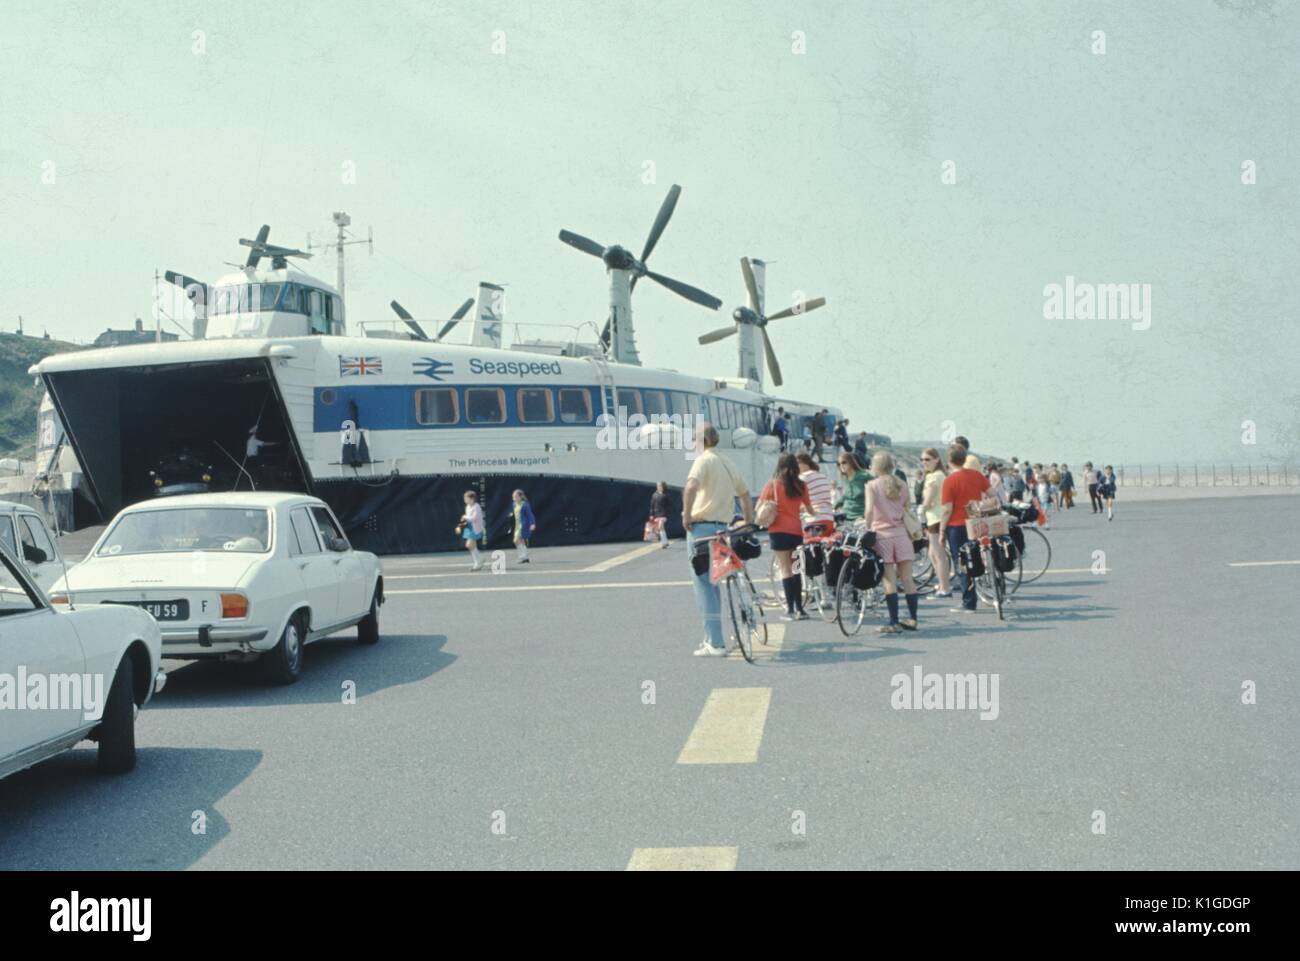 Einen weißen Propeller angetrieben Fähre am Hafen angedockt an mehrere Passagiere warten an Bord sie über einem Körper von Wasser zur Fähre, mit Radfahrern und Autos im Vordergrund geparkt, Nova Scotia, 1966. Stockfoto